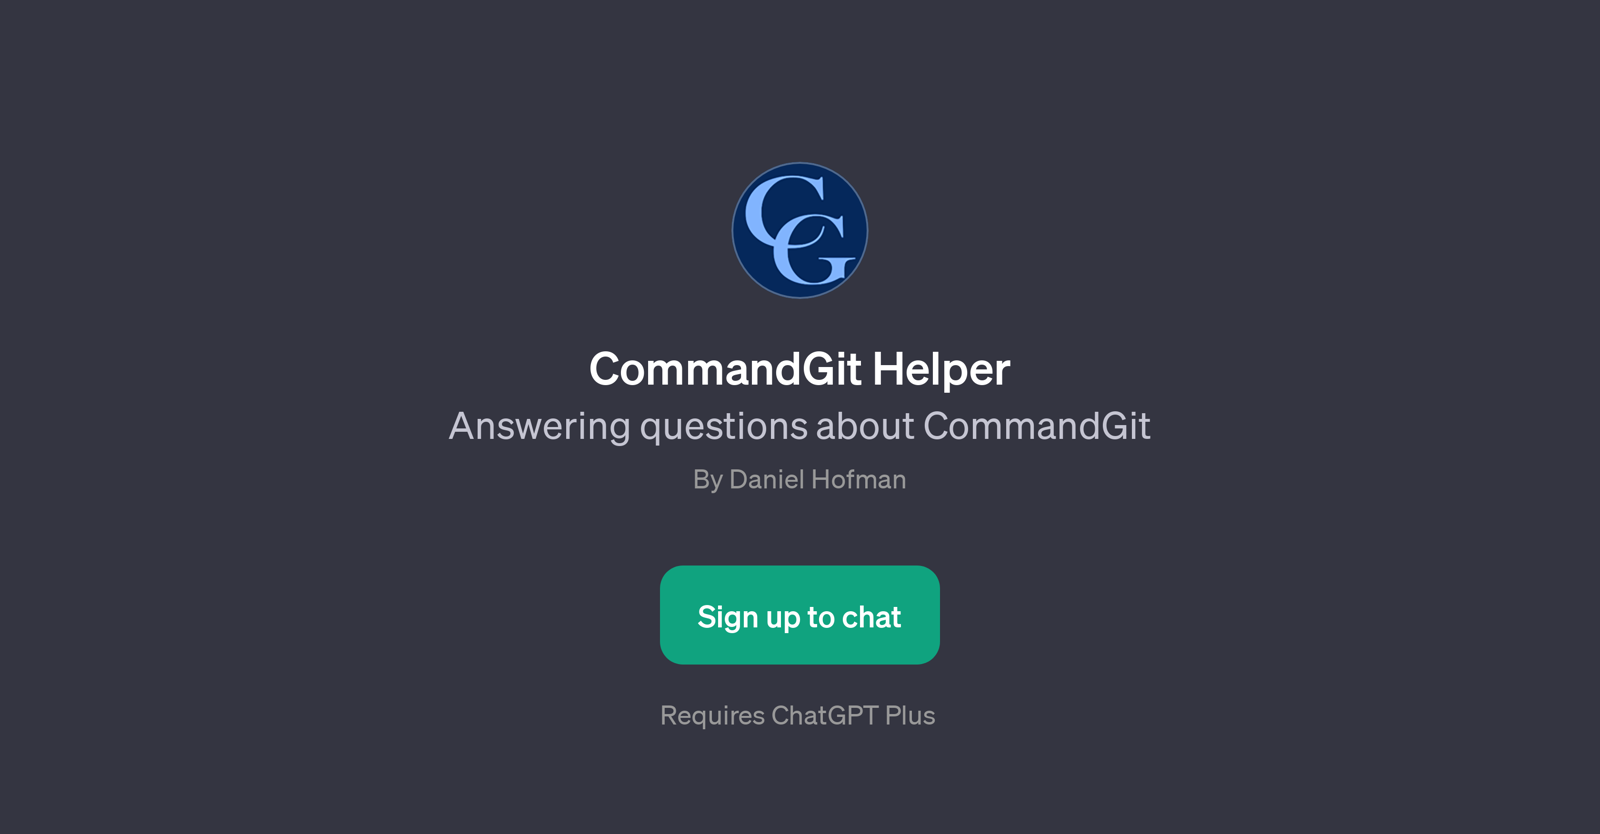 CommandGit Helper website